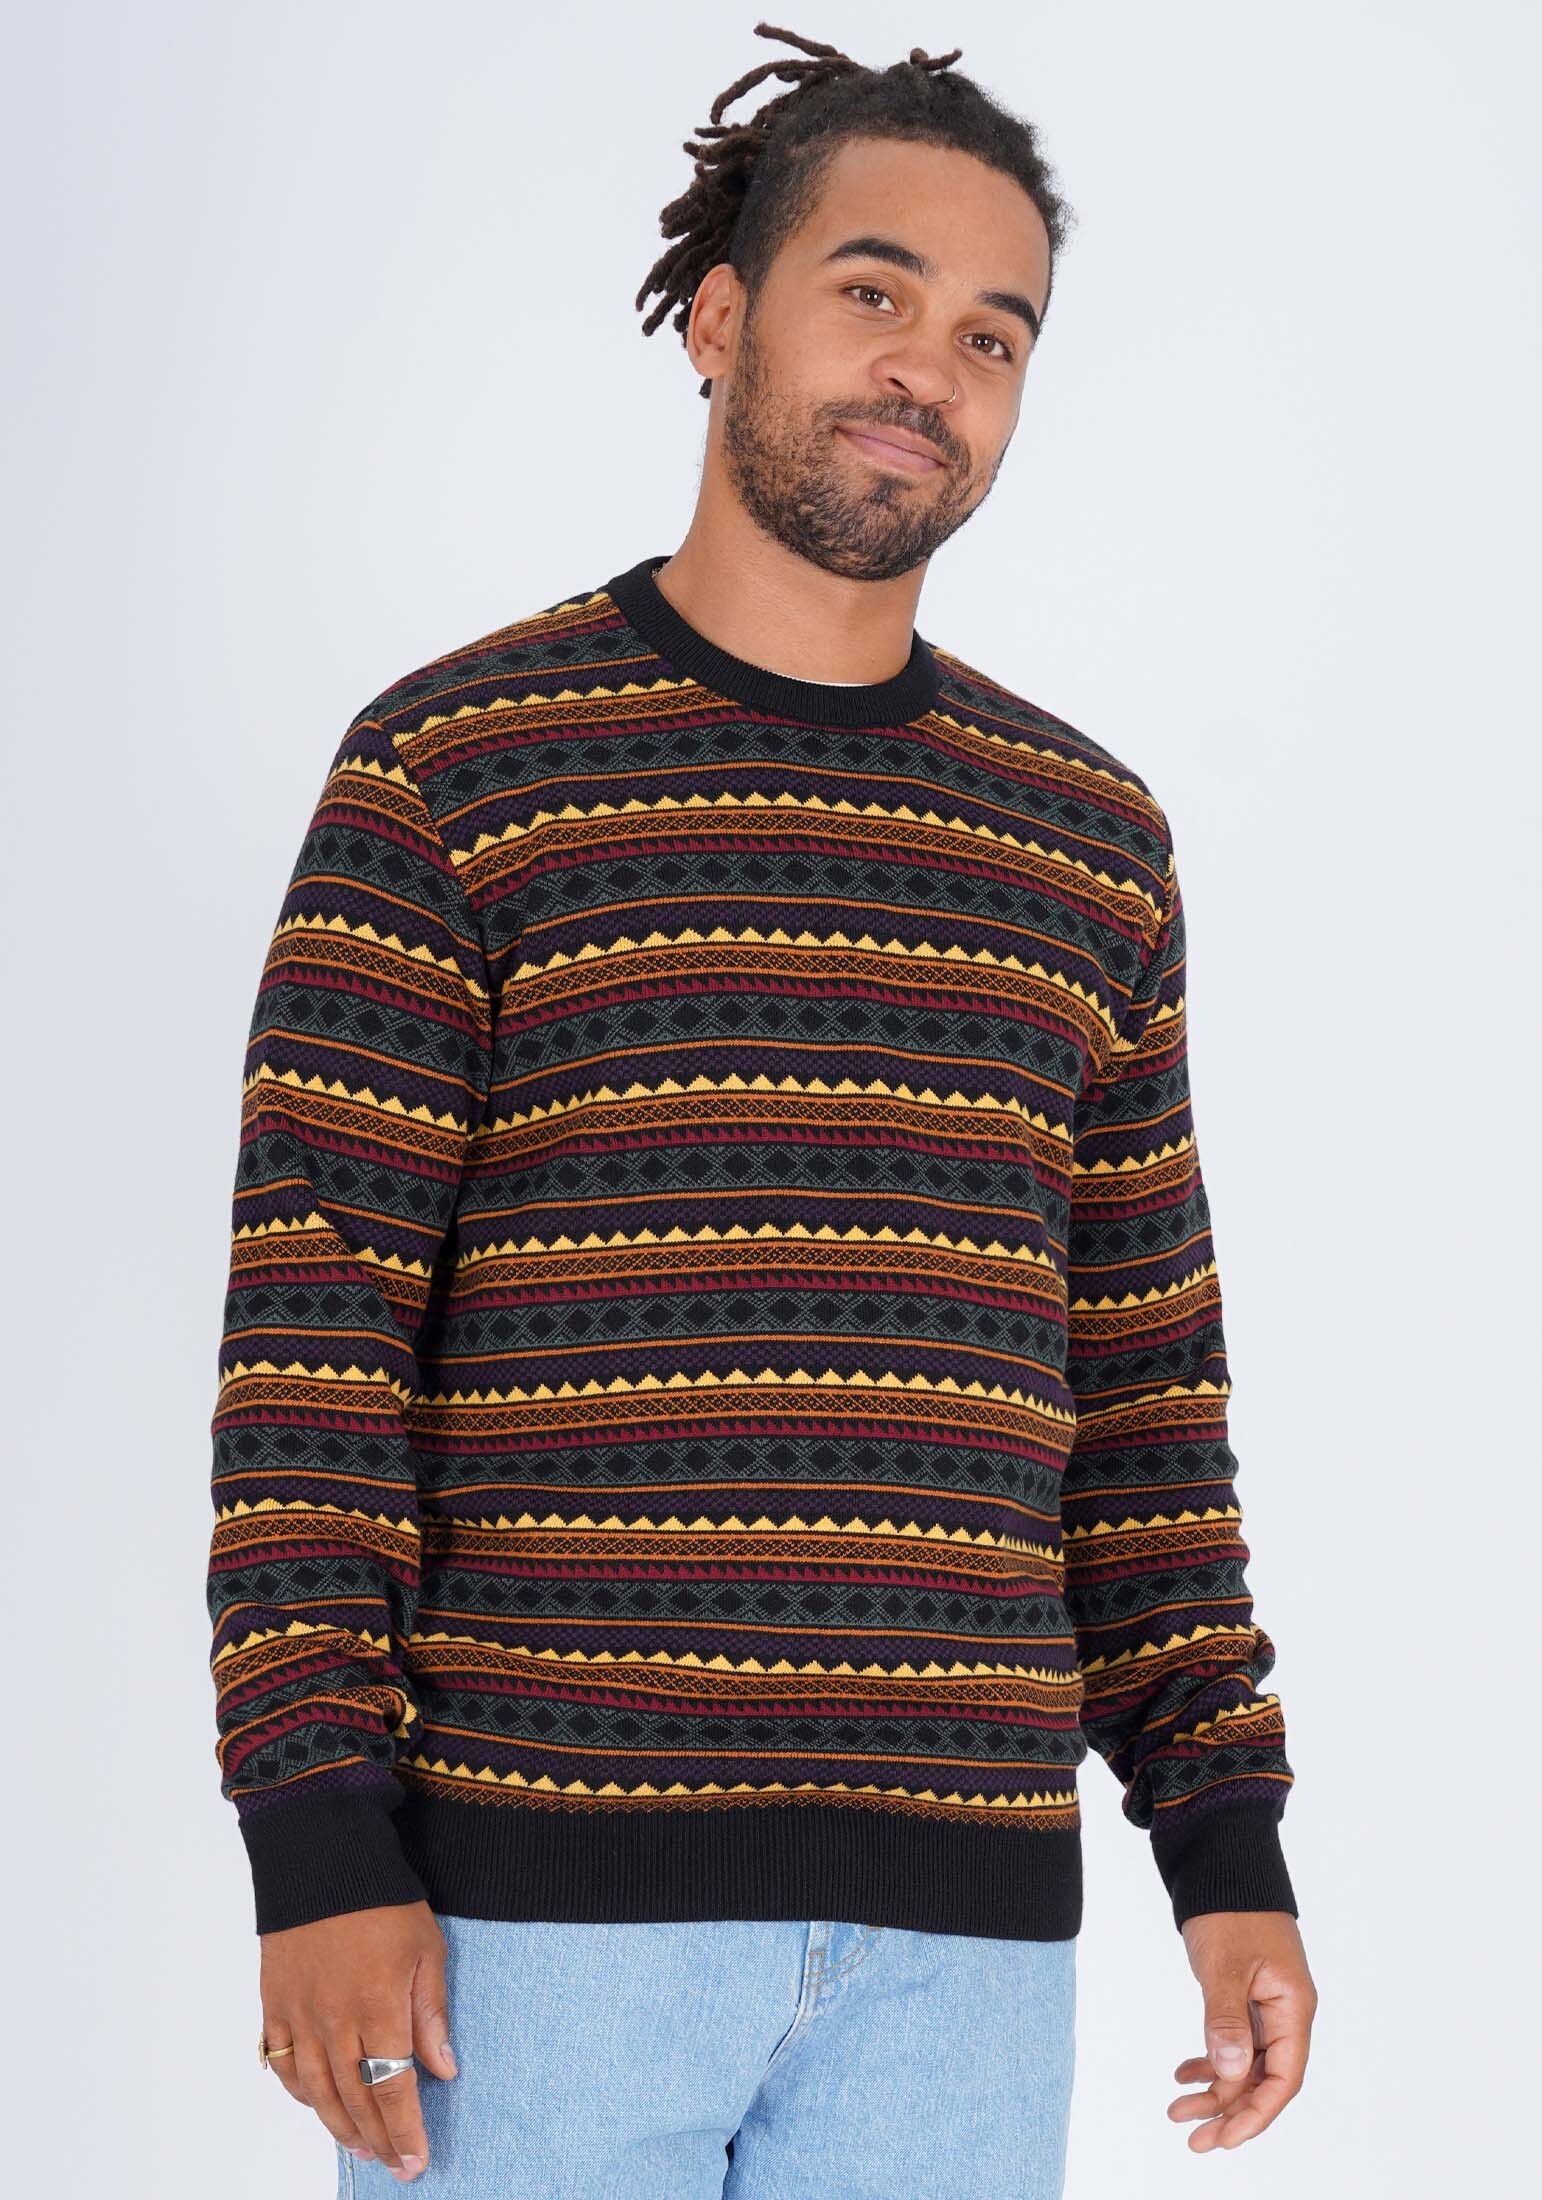 пуловер honesty rules strick jacquard цвет multi colors Пуловер HONESTY RULES Strick Jacquard, цвет multi colors